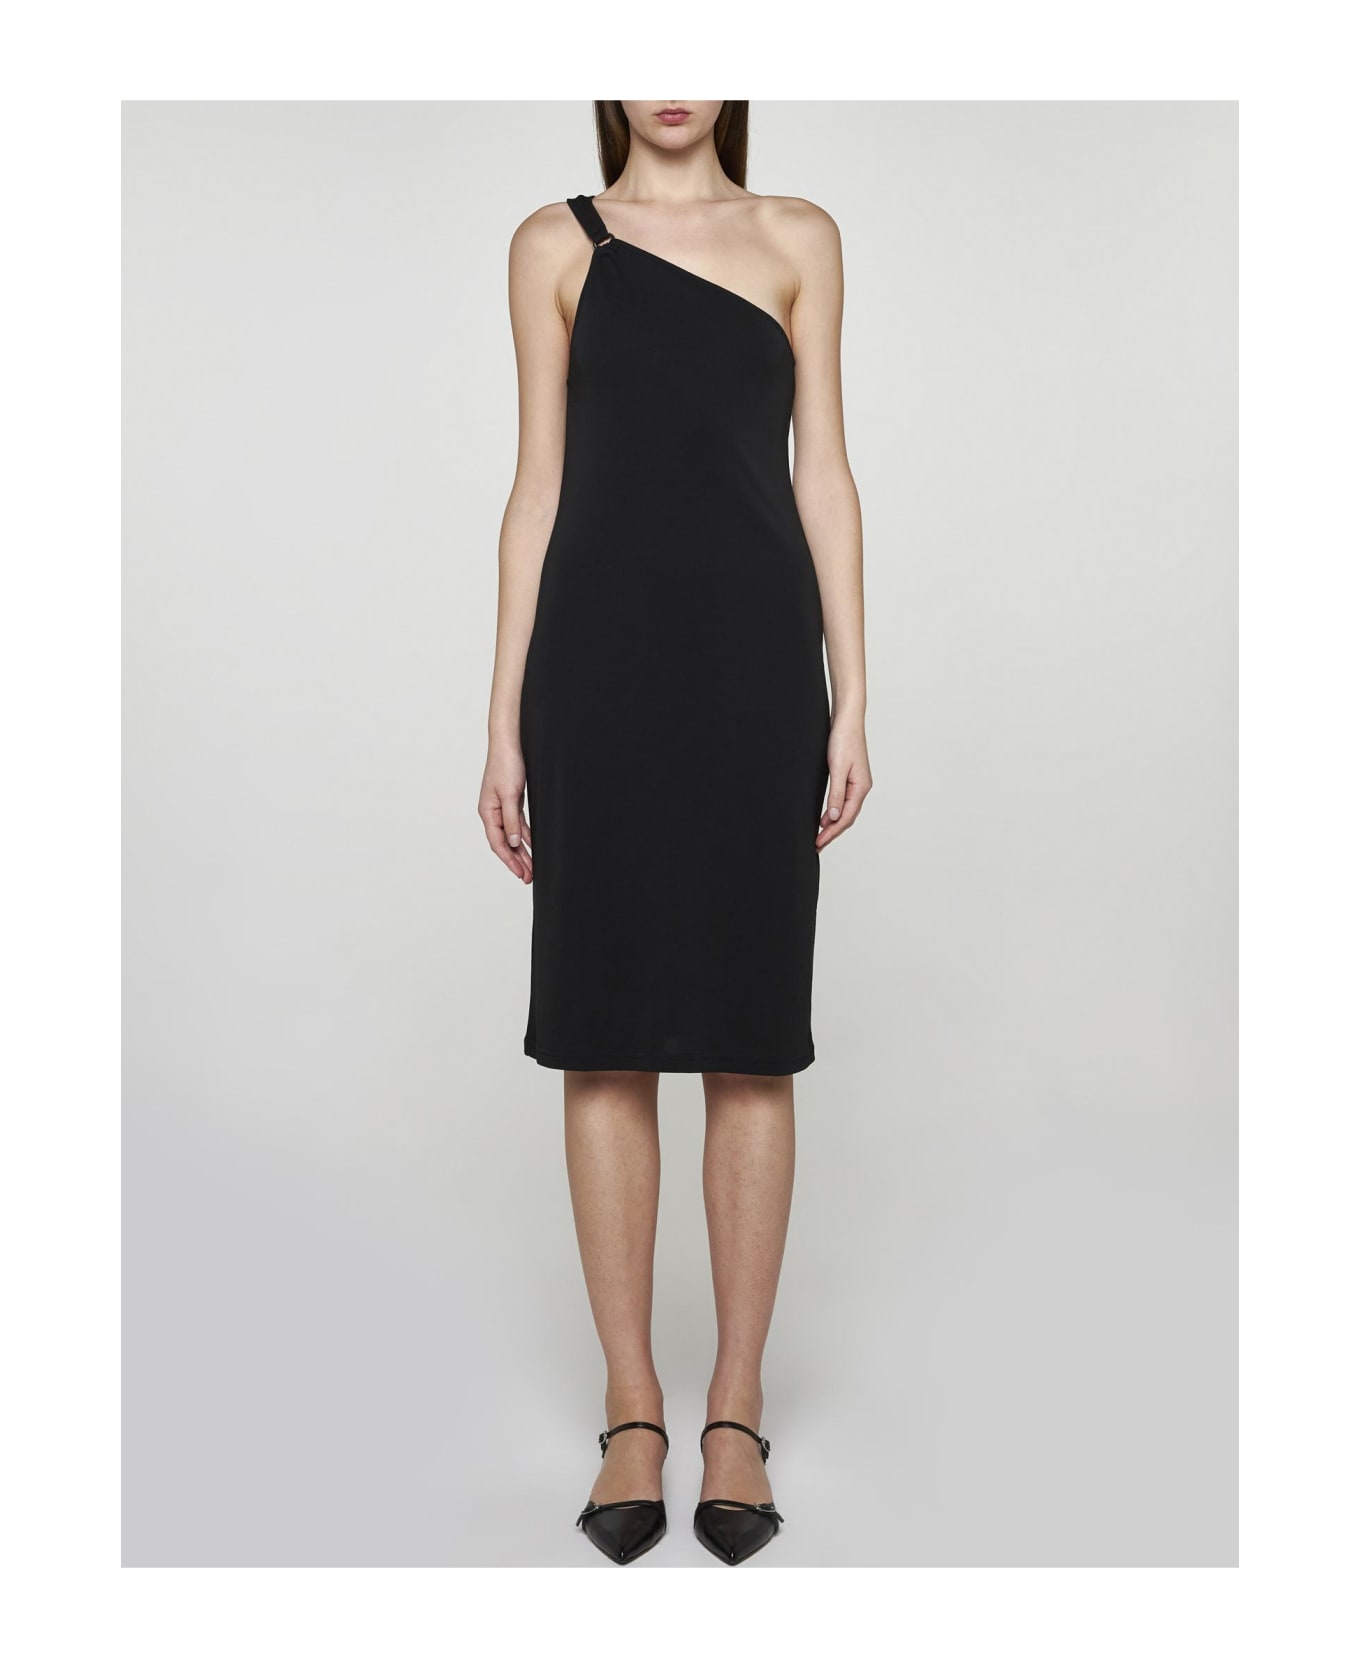 Filippa K Acetate-blend One-shoulder Dress - Black